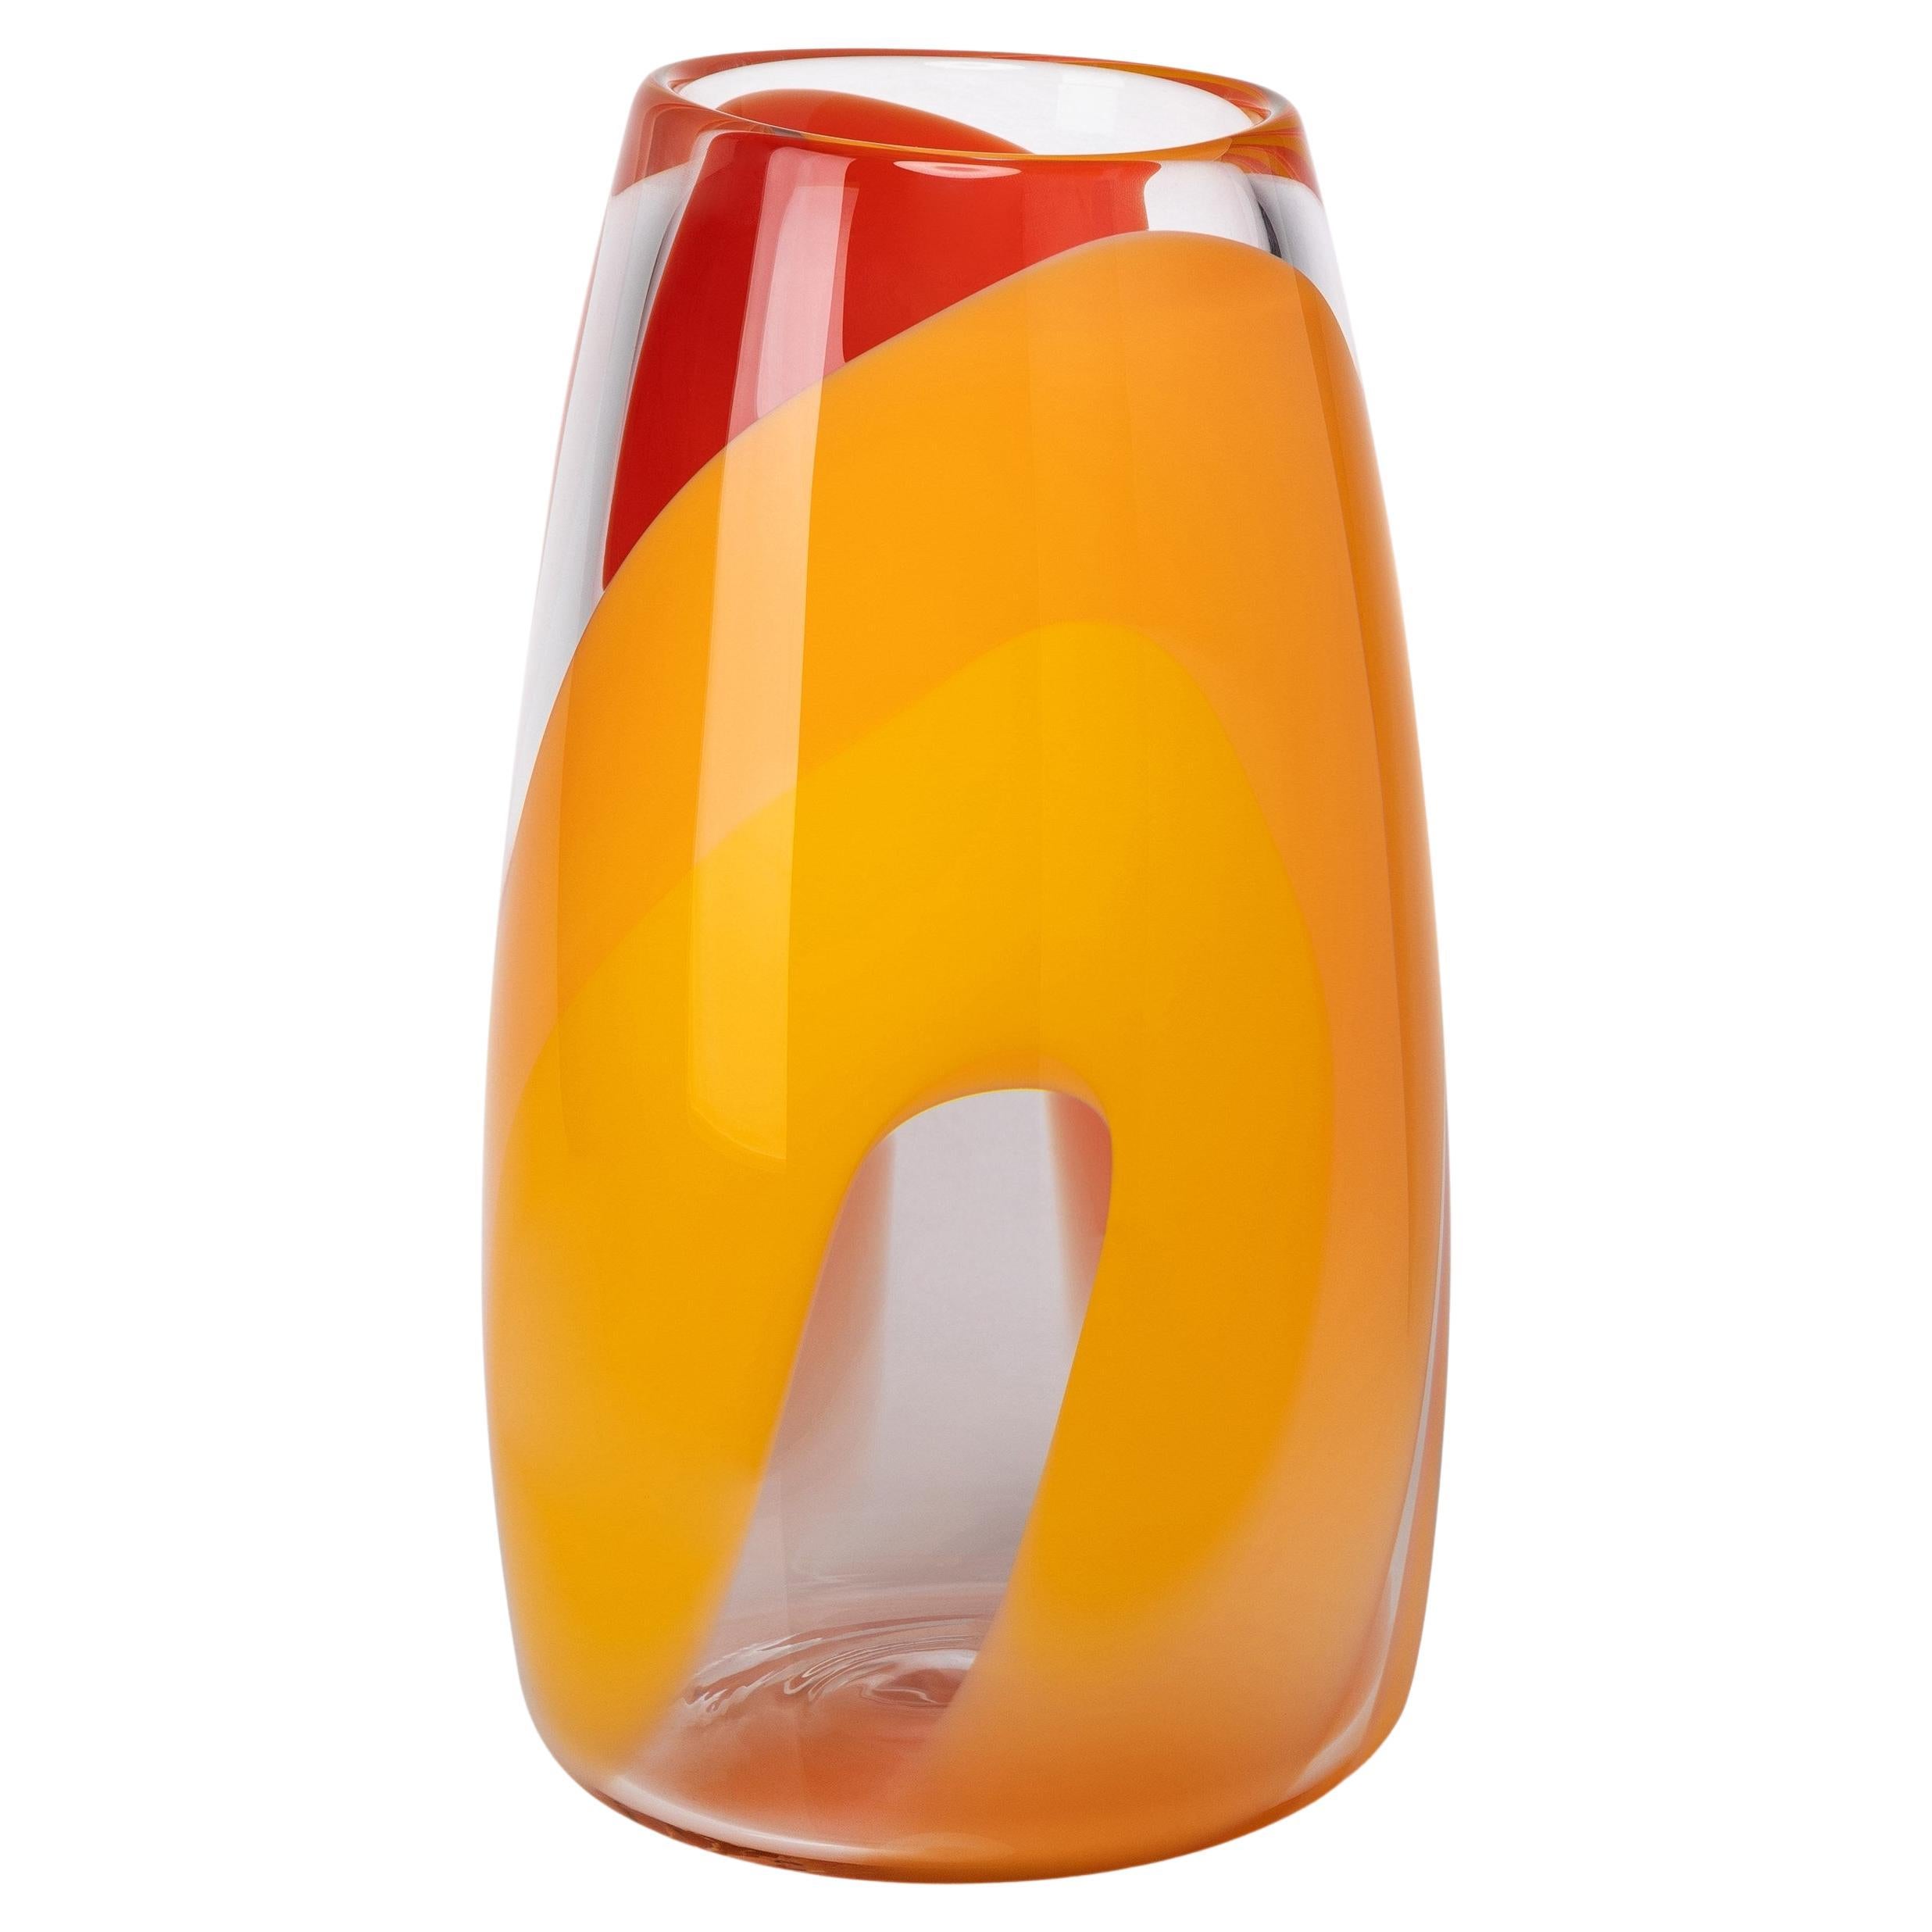 Vase Waves No 464, en verre soufflé à la main, transparent, orange et jaune, de Neil Wilkin